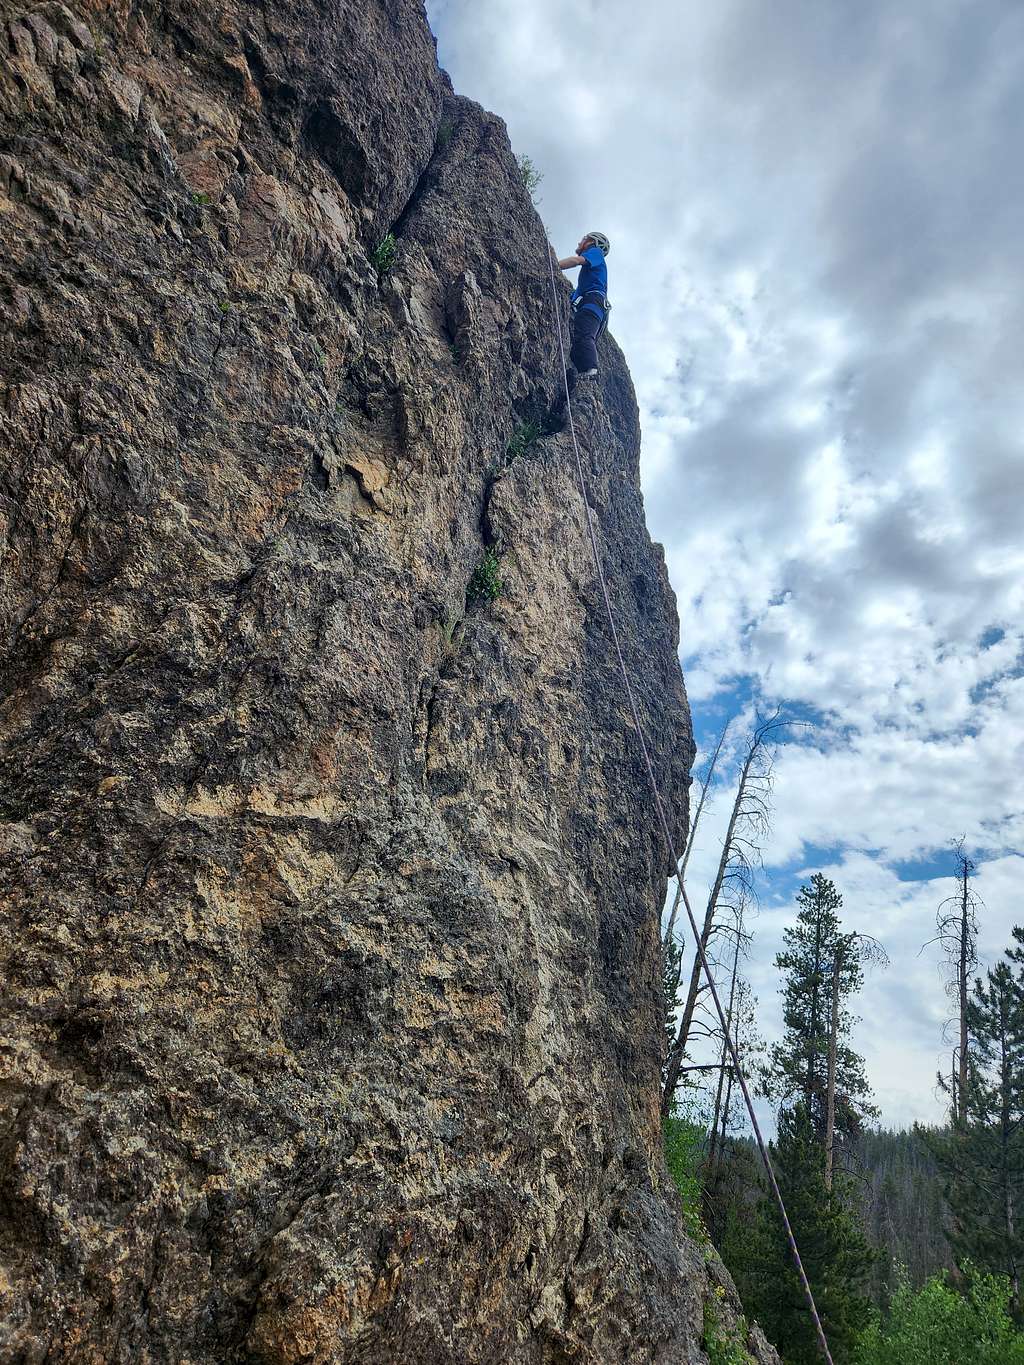 Kessler Climbing at Hurd Creek